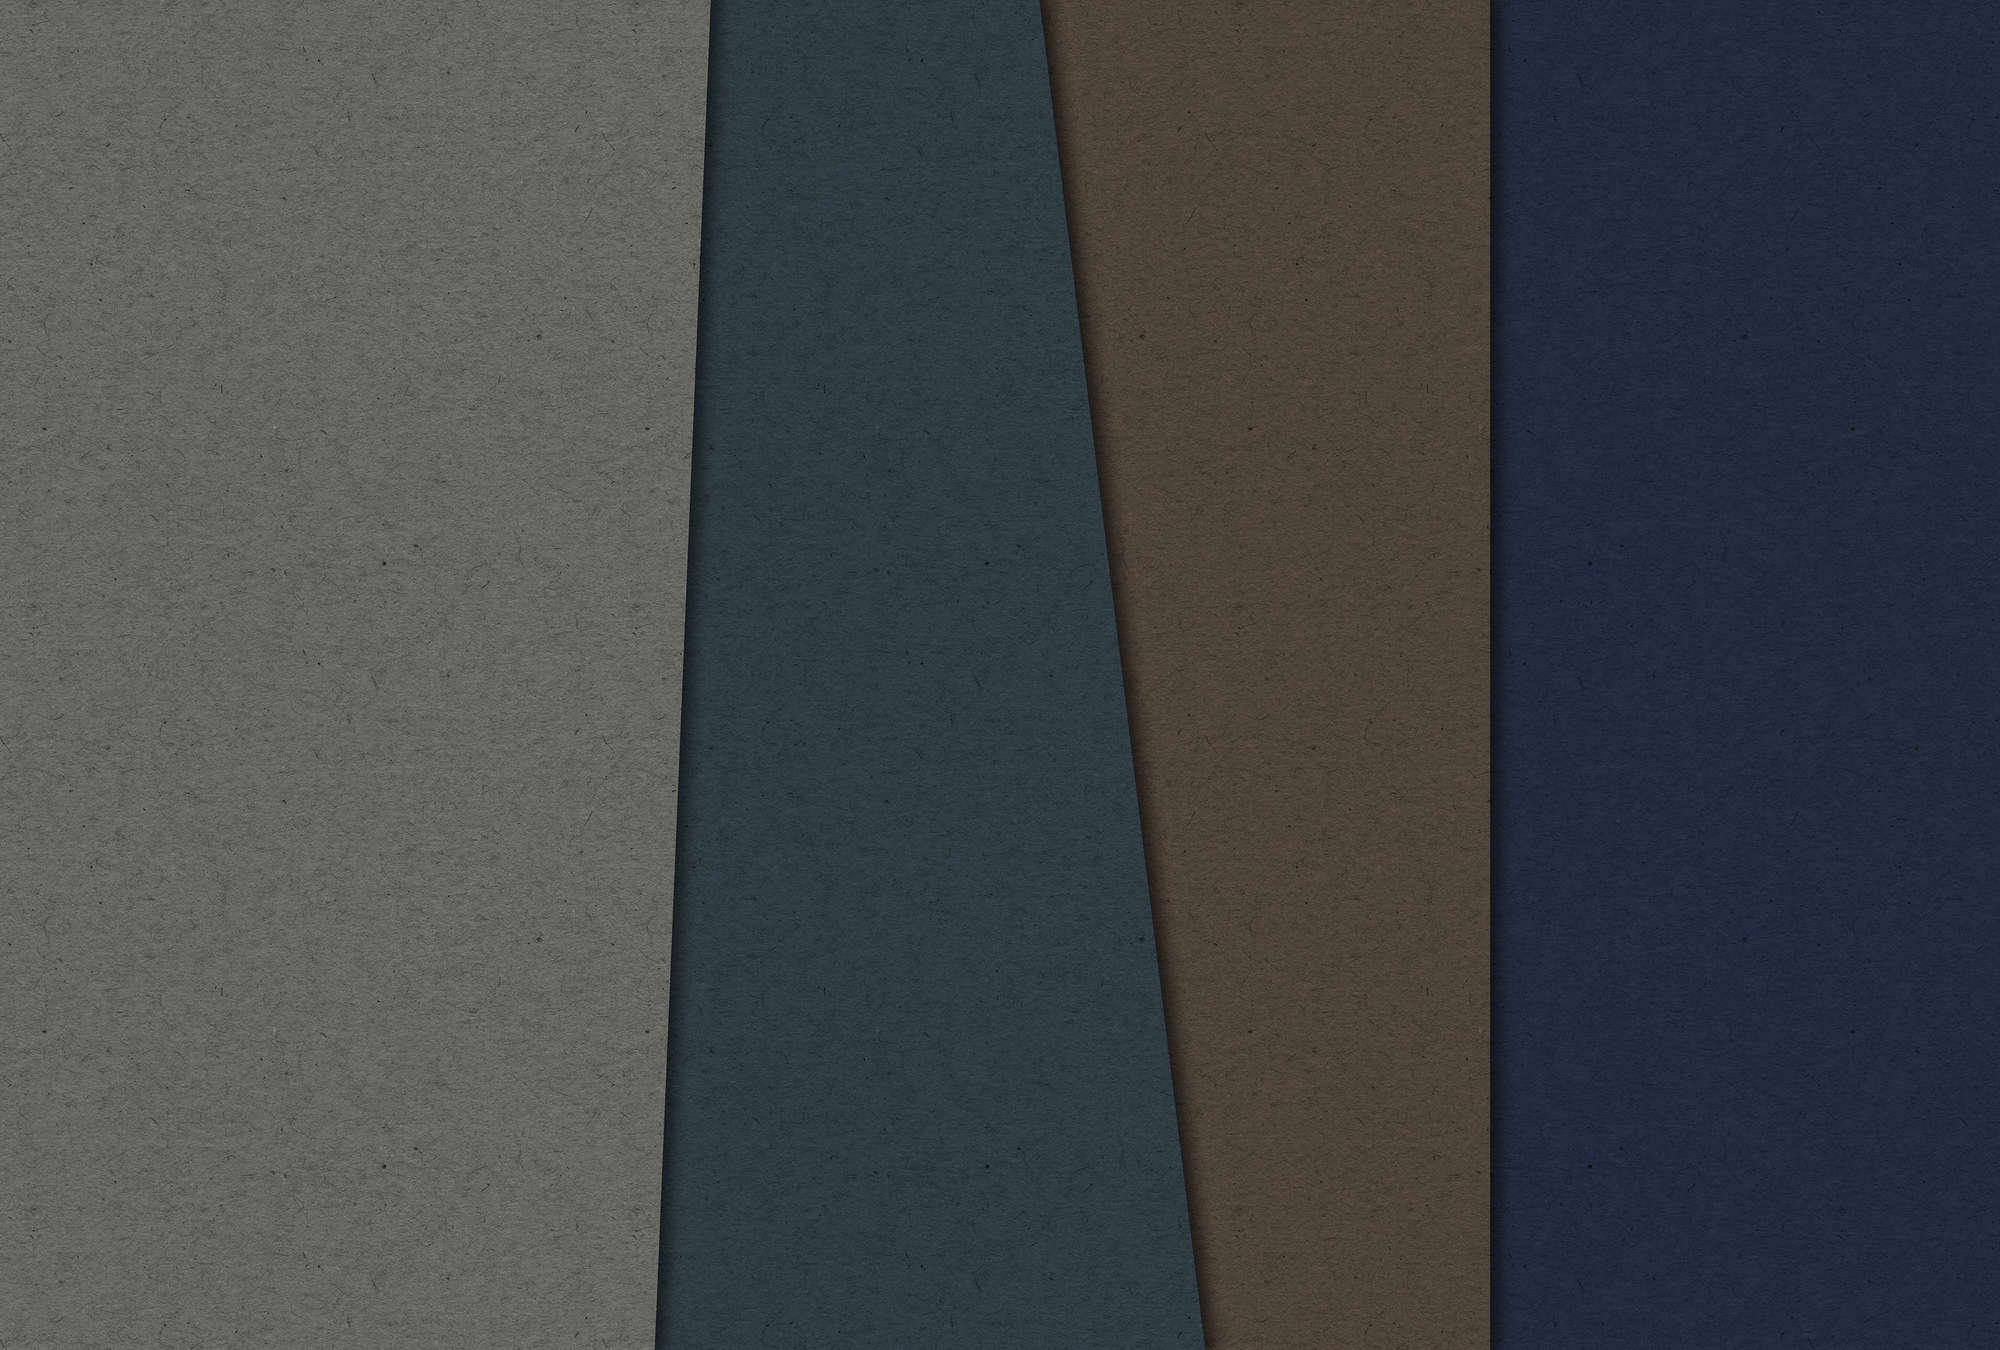             Gelaagd karton 2 - Fotobehang in kartonstructuur met donkere kleurvlakken - Blauw, Bruin | Parelglad vlies
        